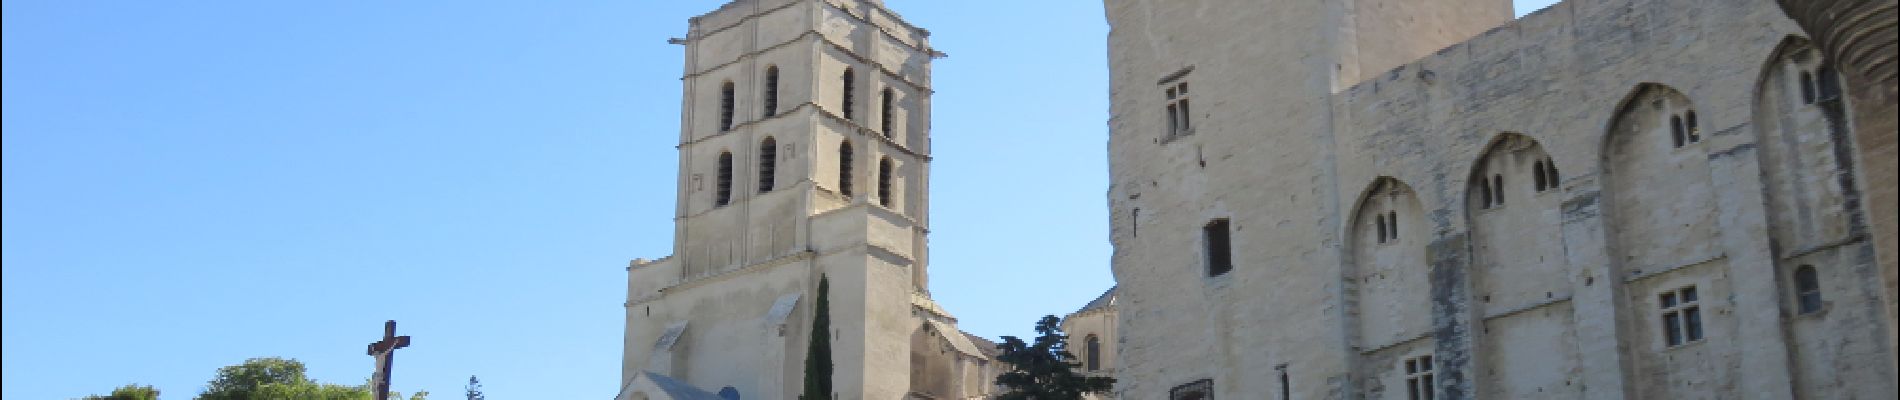 POI Avignon - Notre dame des doms  - Photo